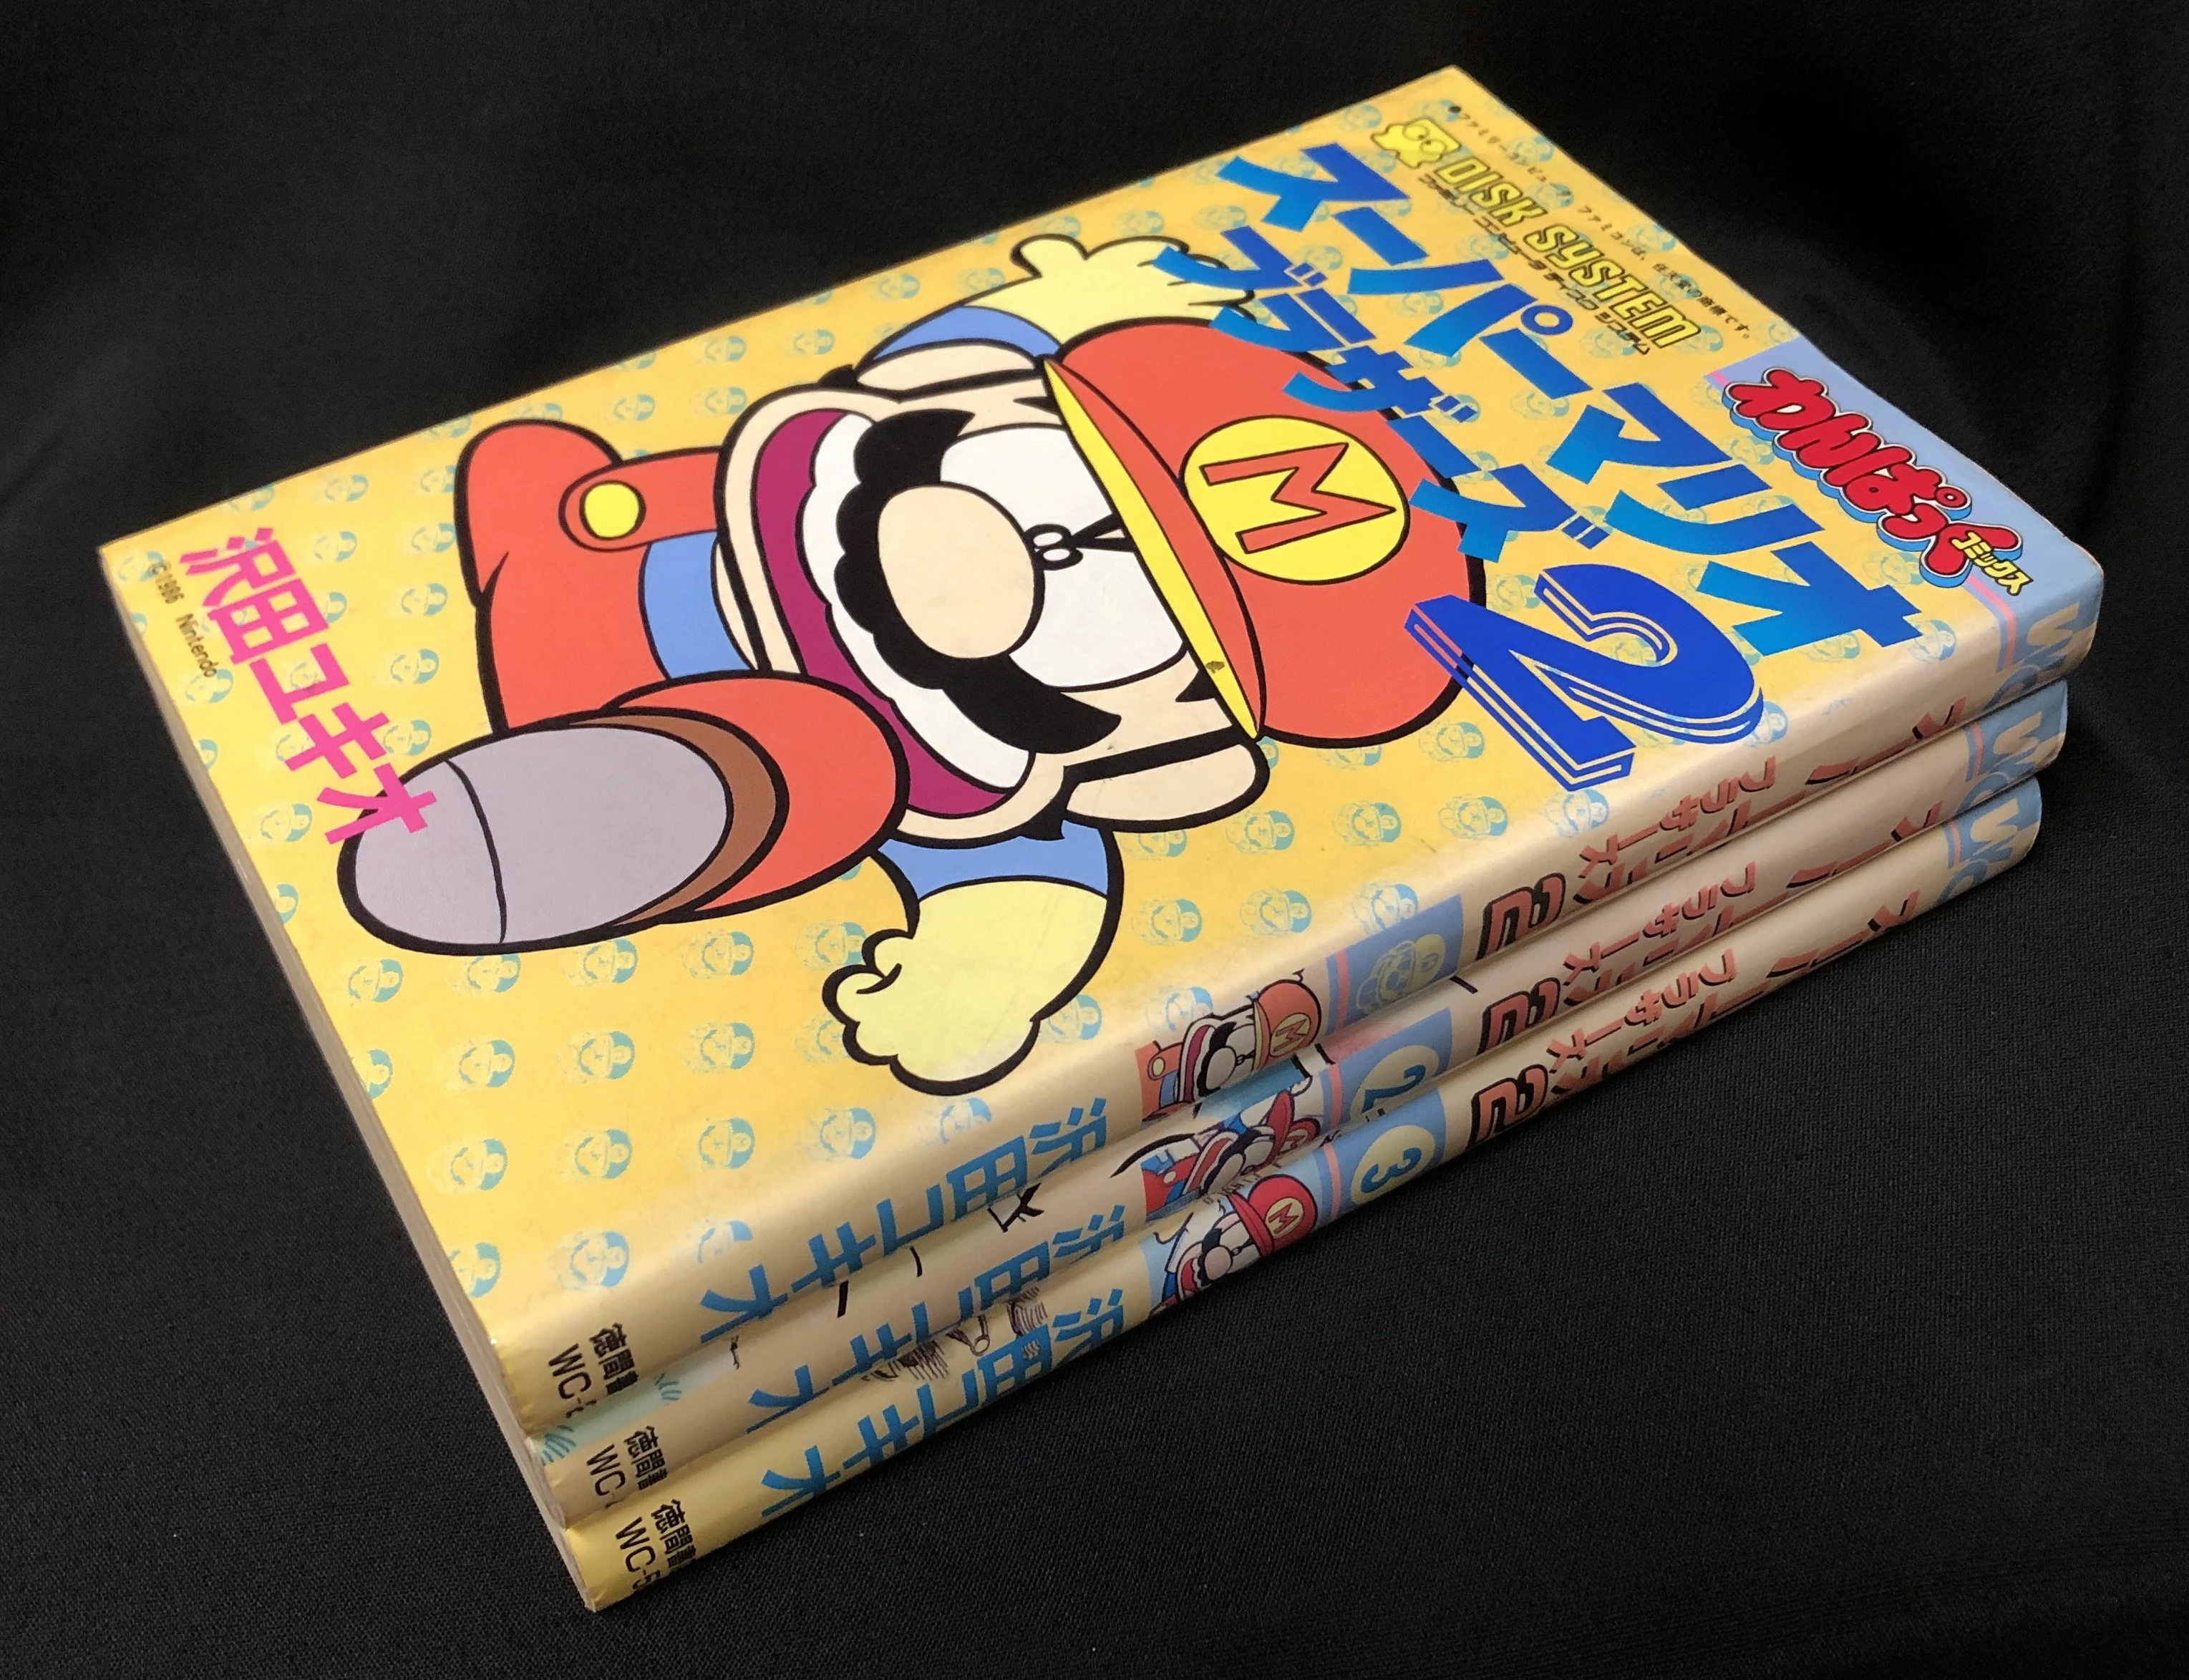 Complete stack of Super Mario Bros. 2 manga